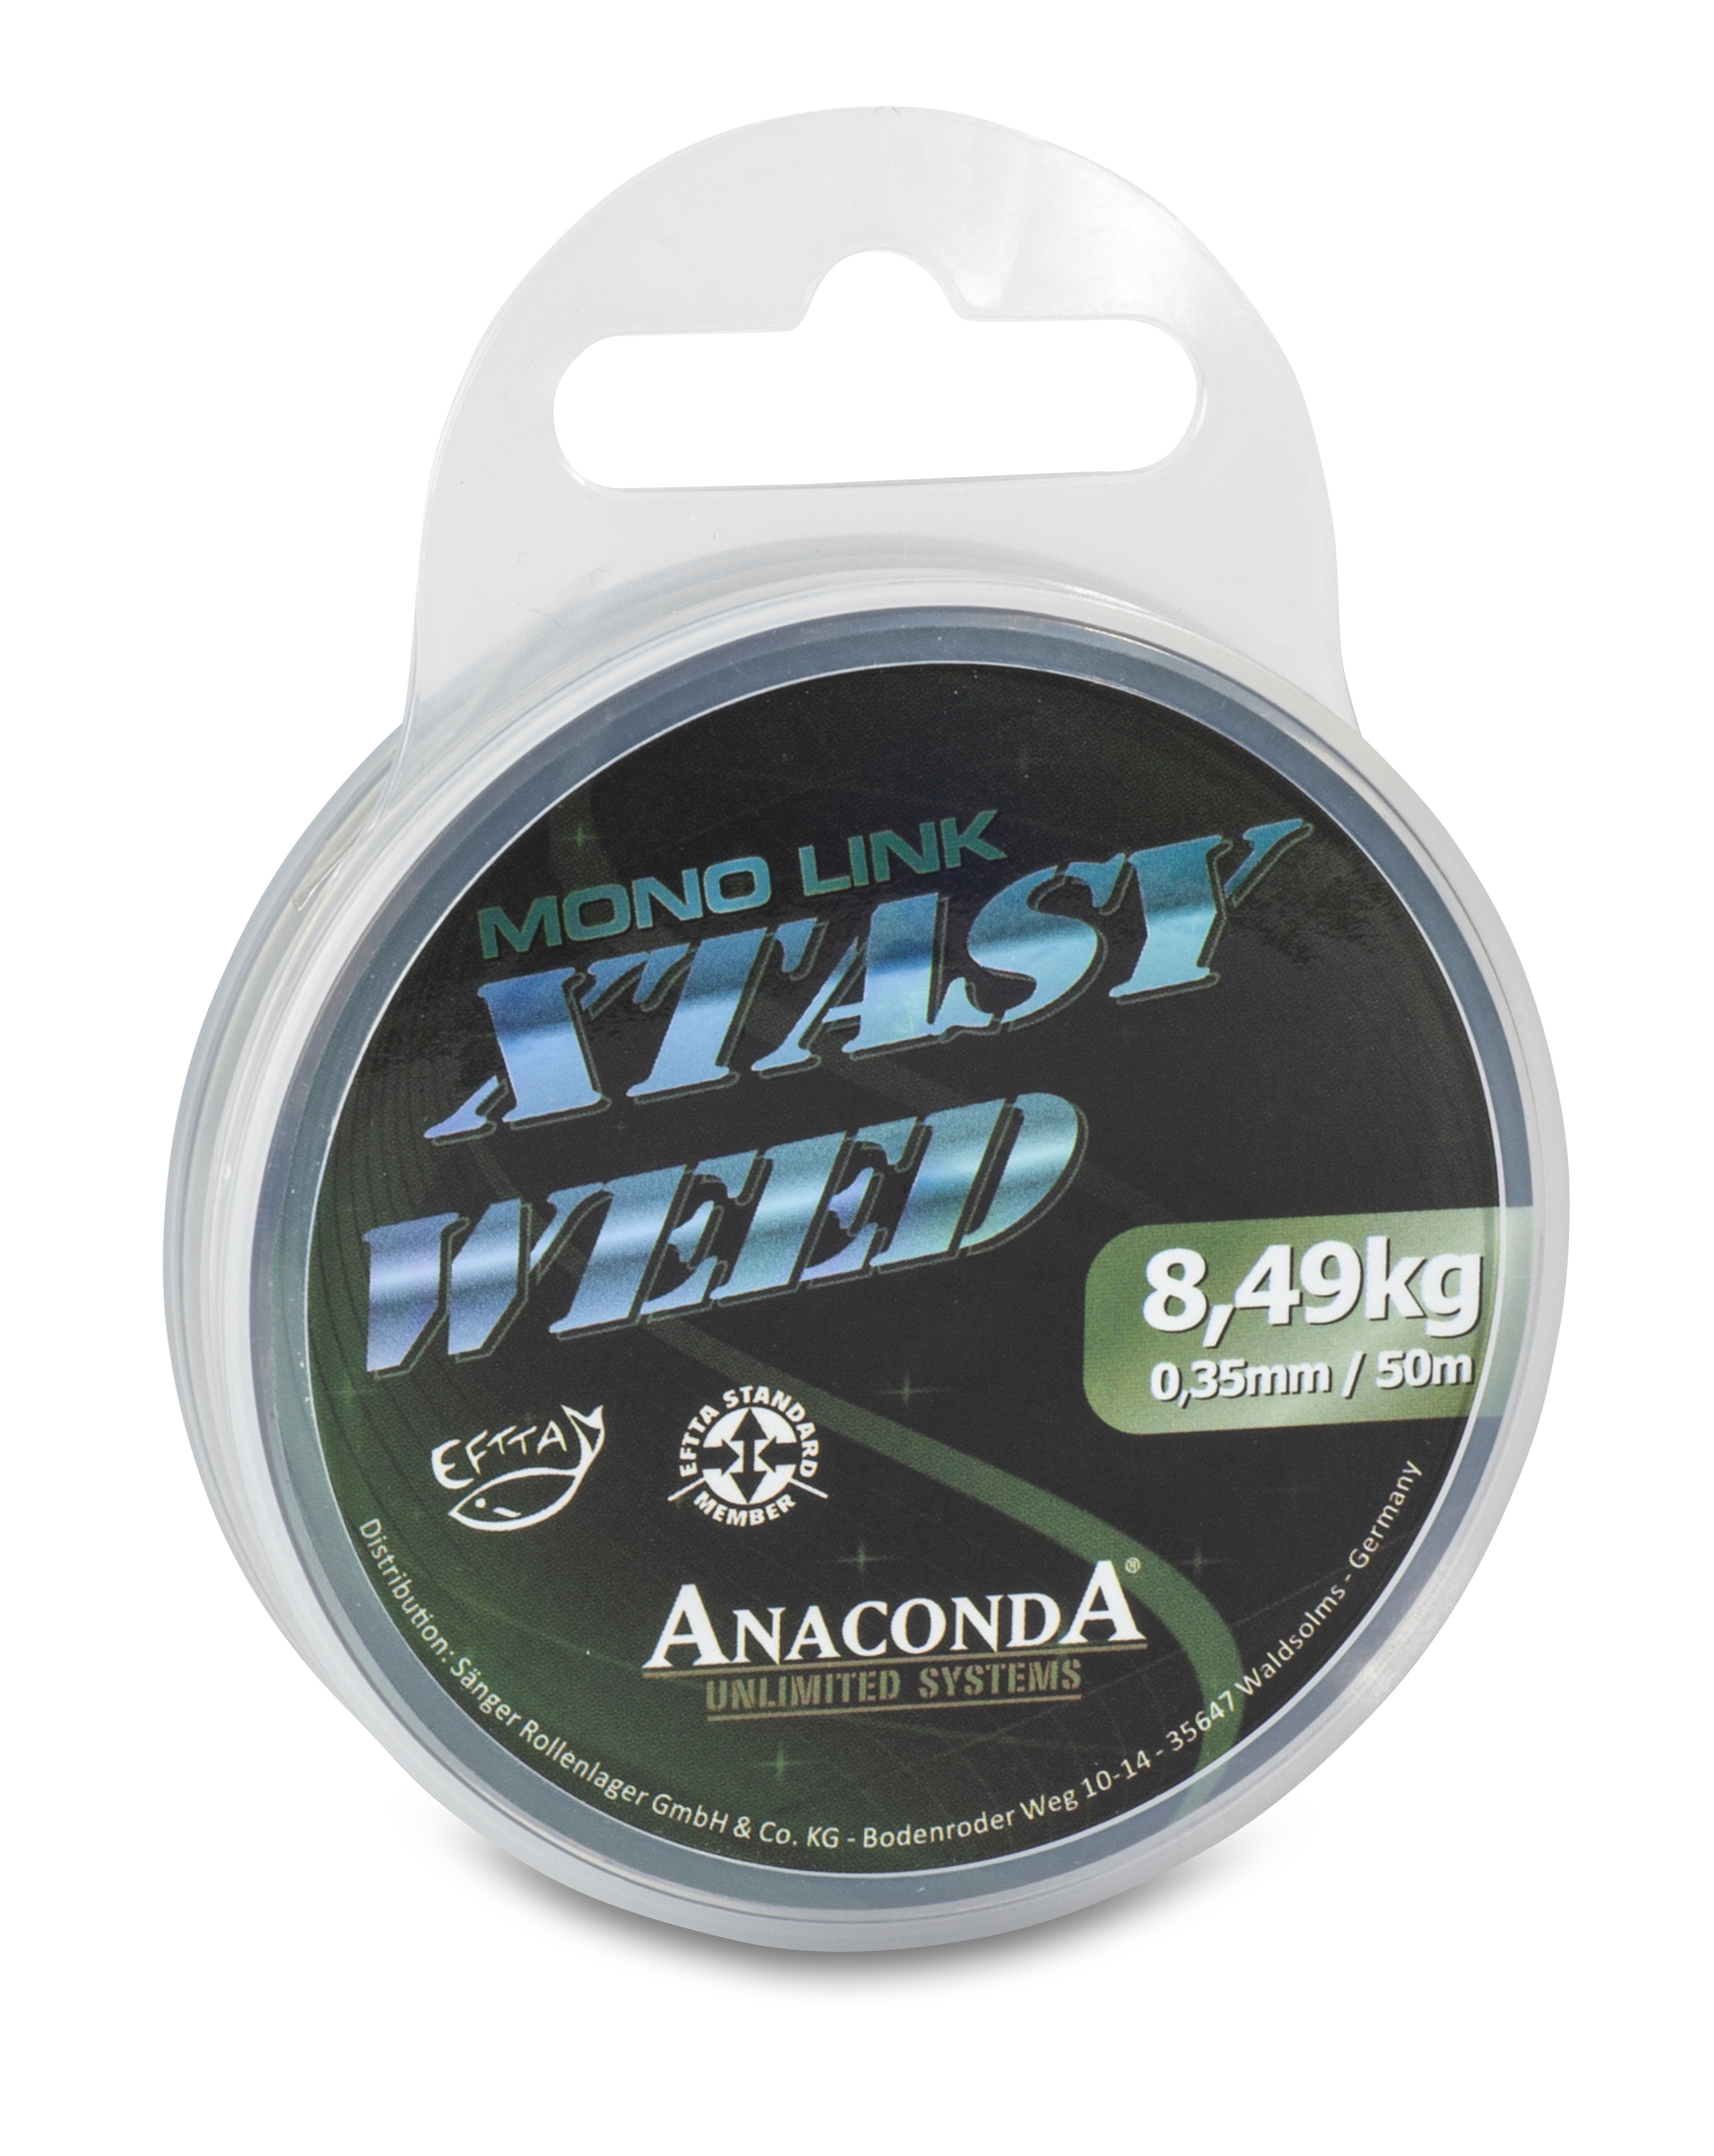 Anaconda Xtasy Weed Mono Link 0,40 mm 50 m-2424640